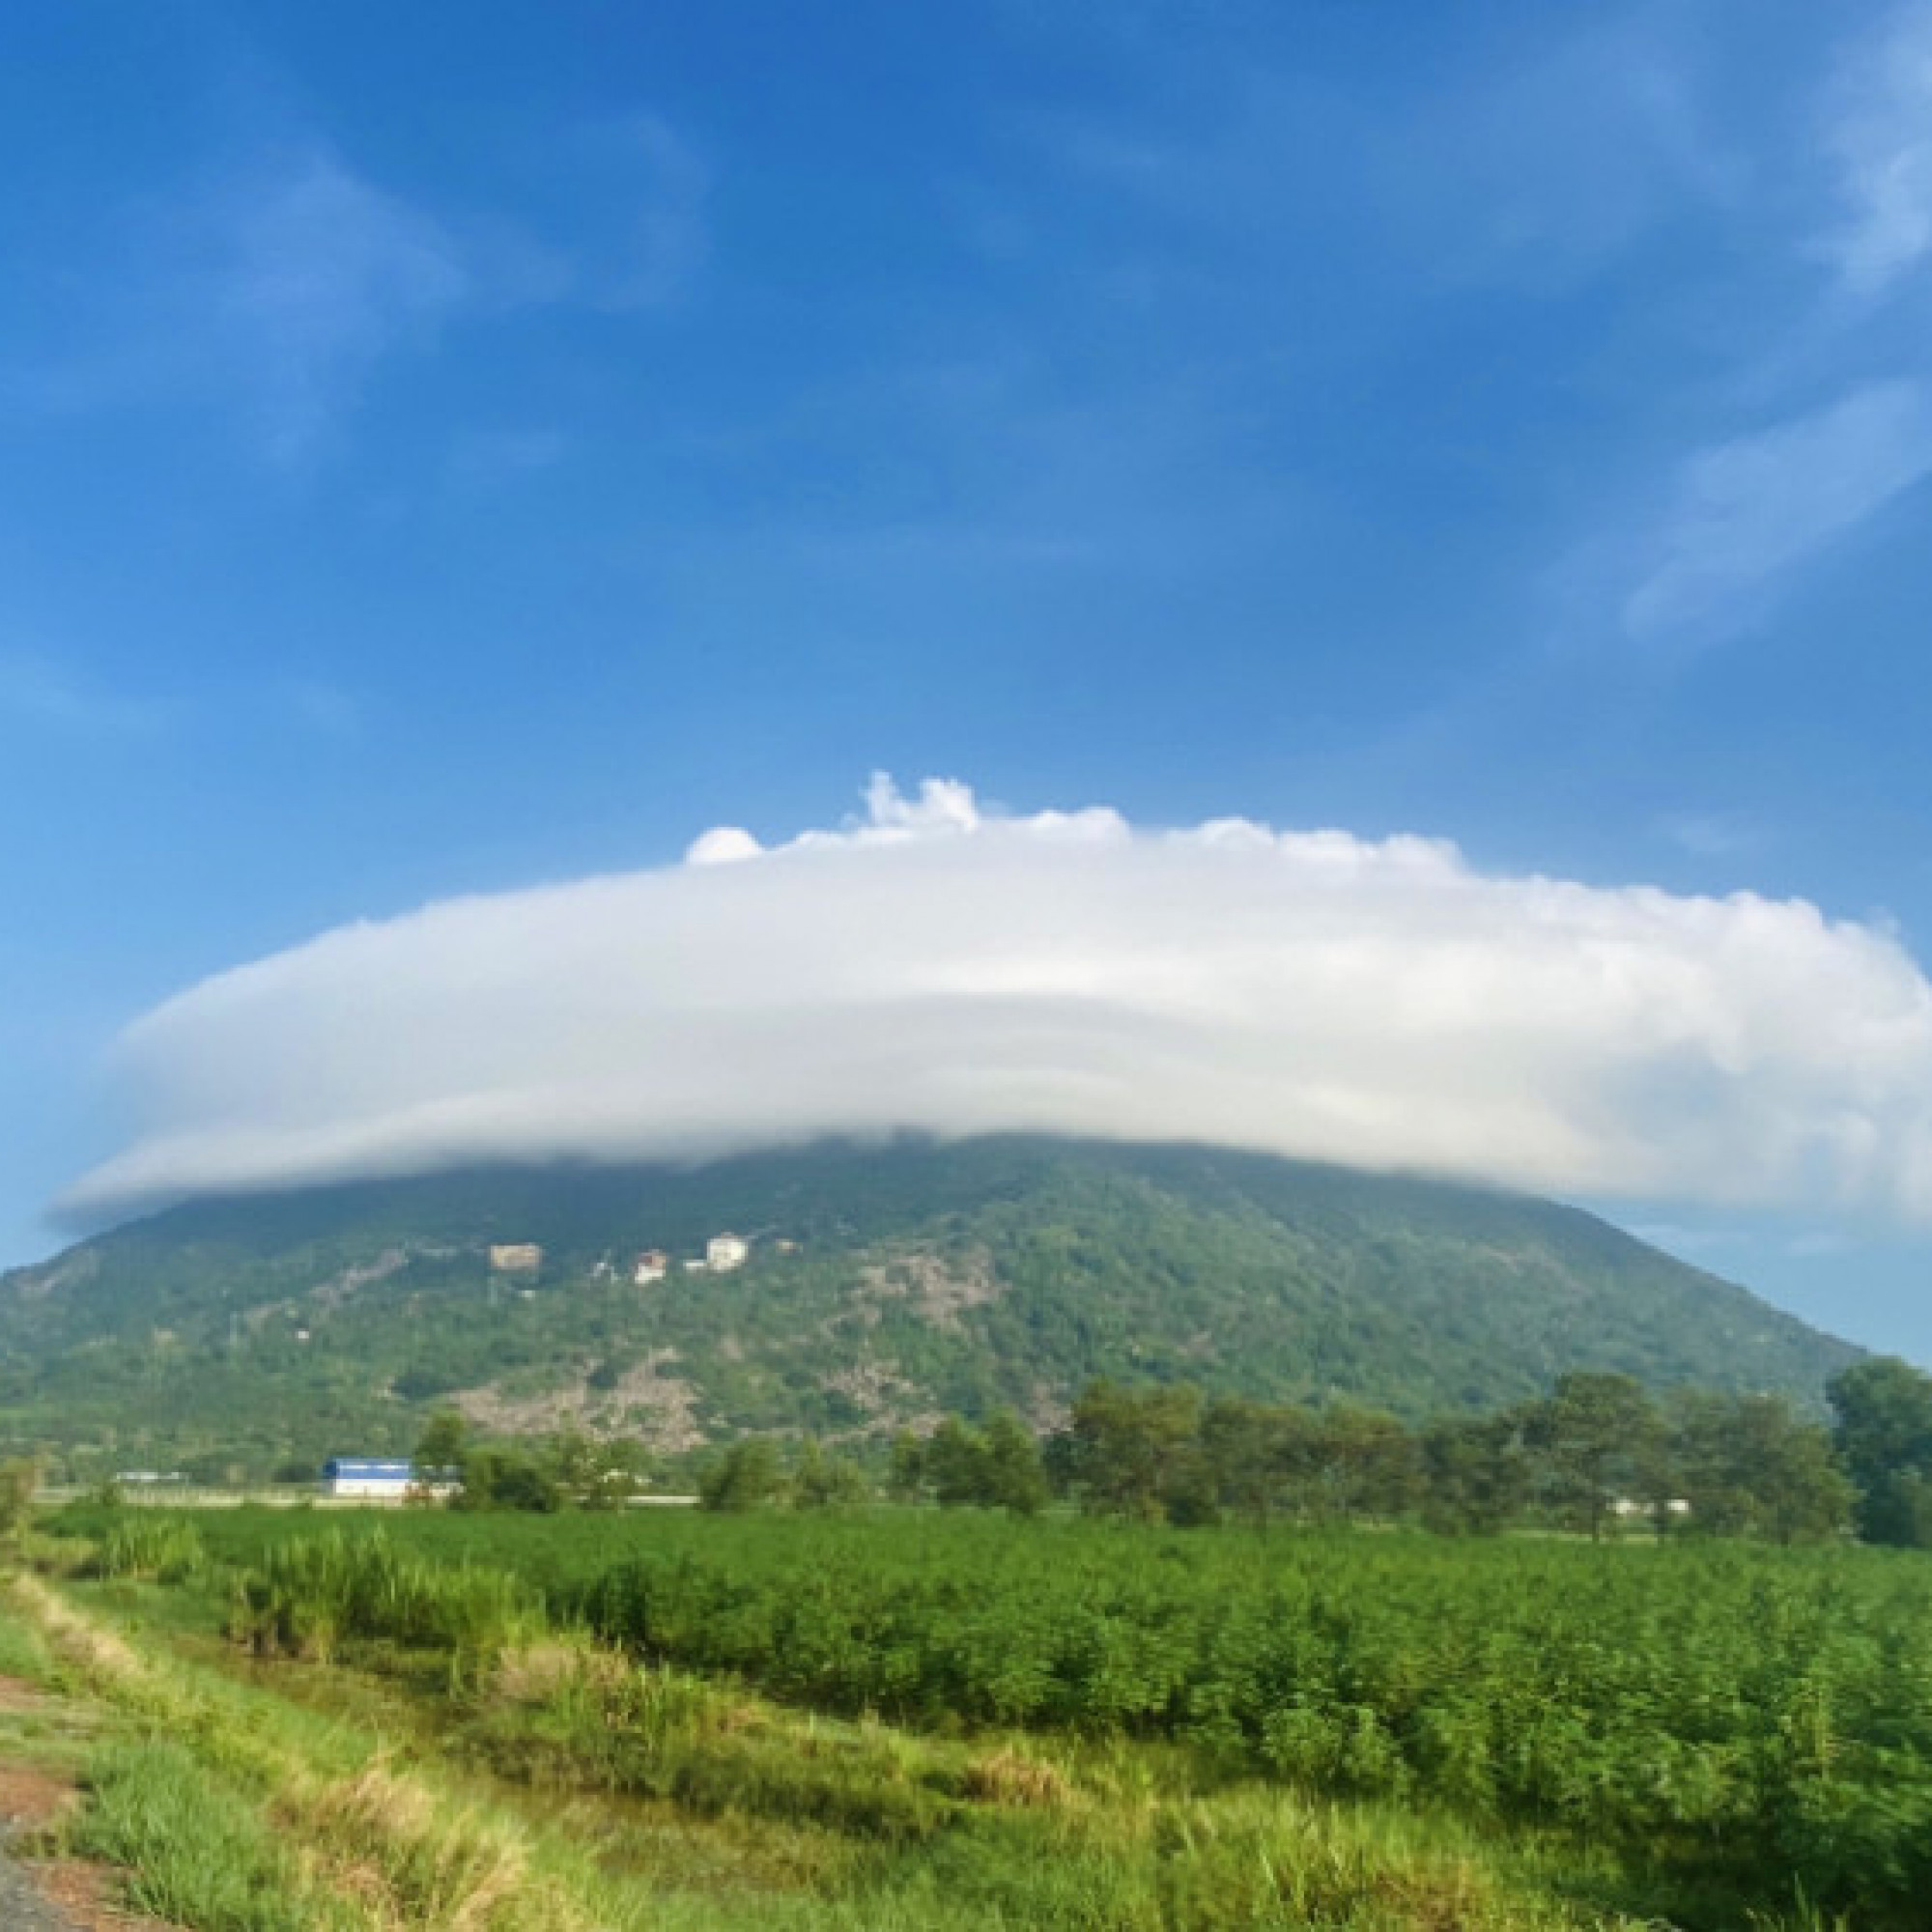 Săn mây đĩa bay tại núi Bà Đen, Tây Ninh đang hot, và đây là bí kíp